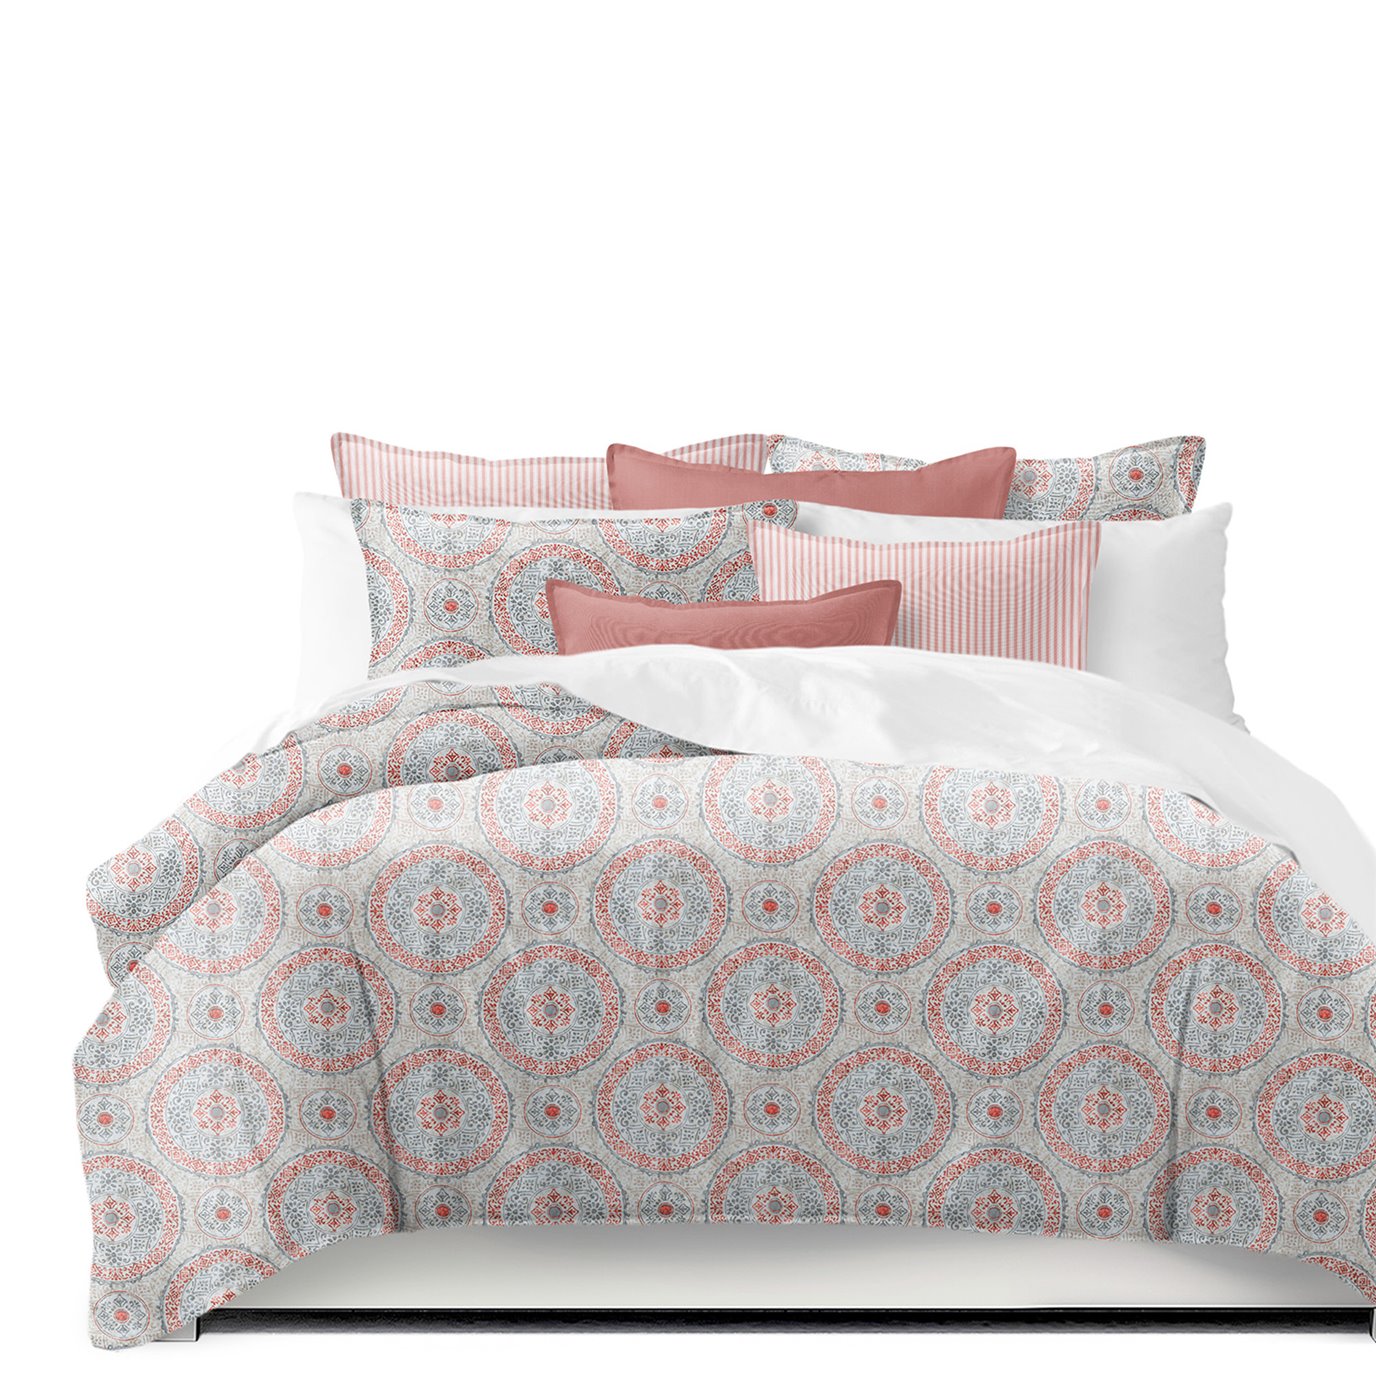 Zayla Coral King Comforter & 2 Shams Set